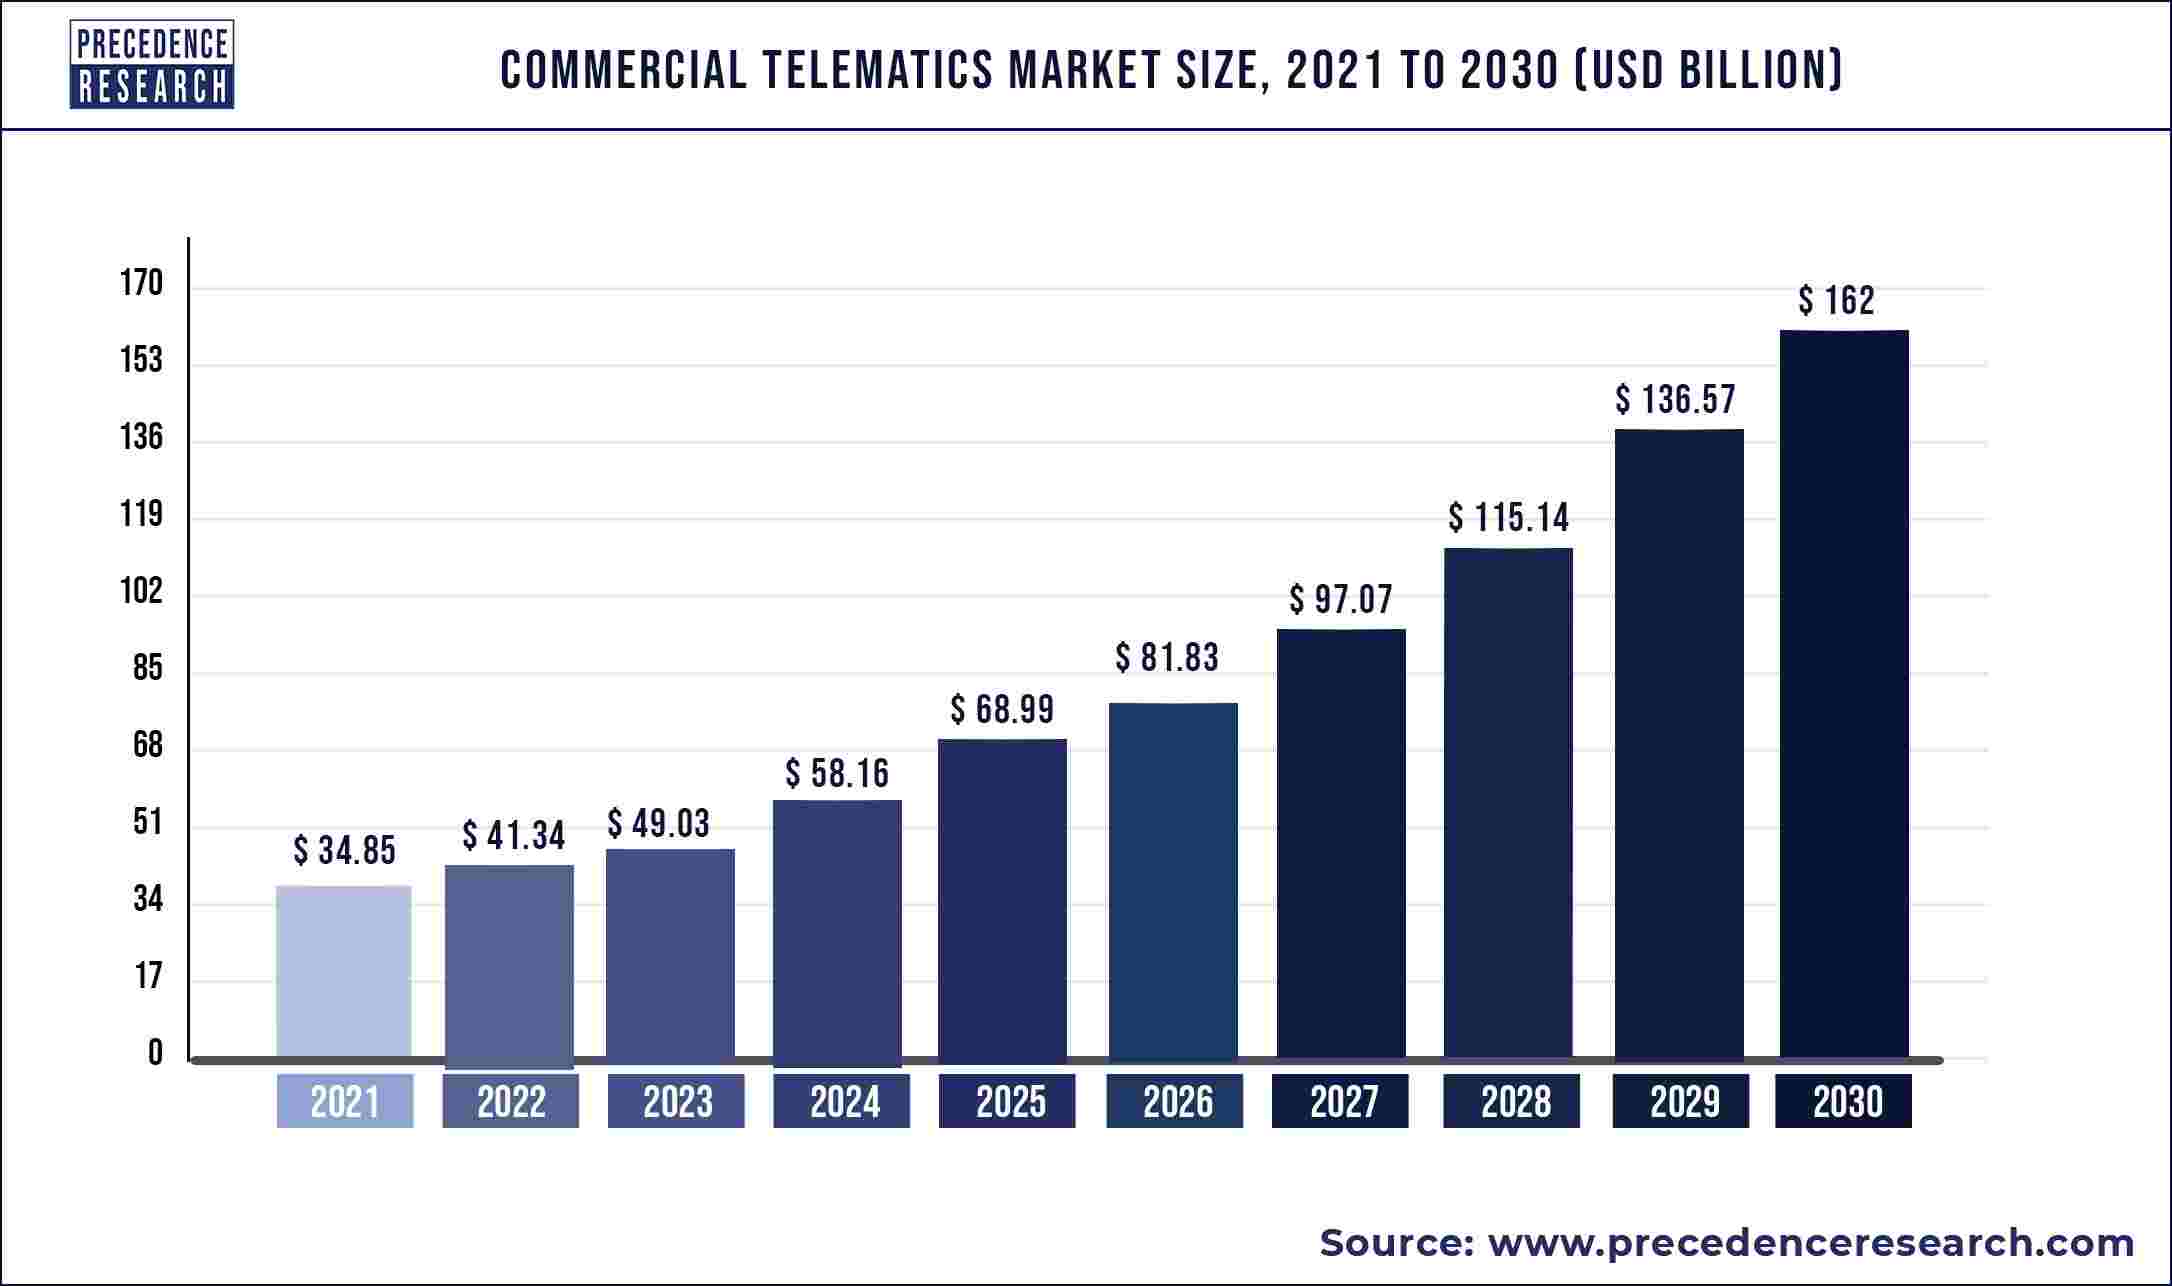 Commercial Telematics